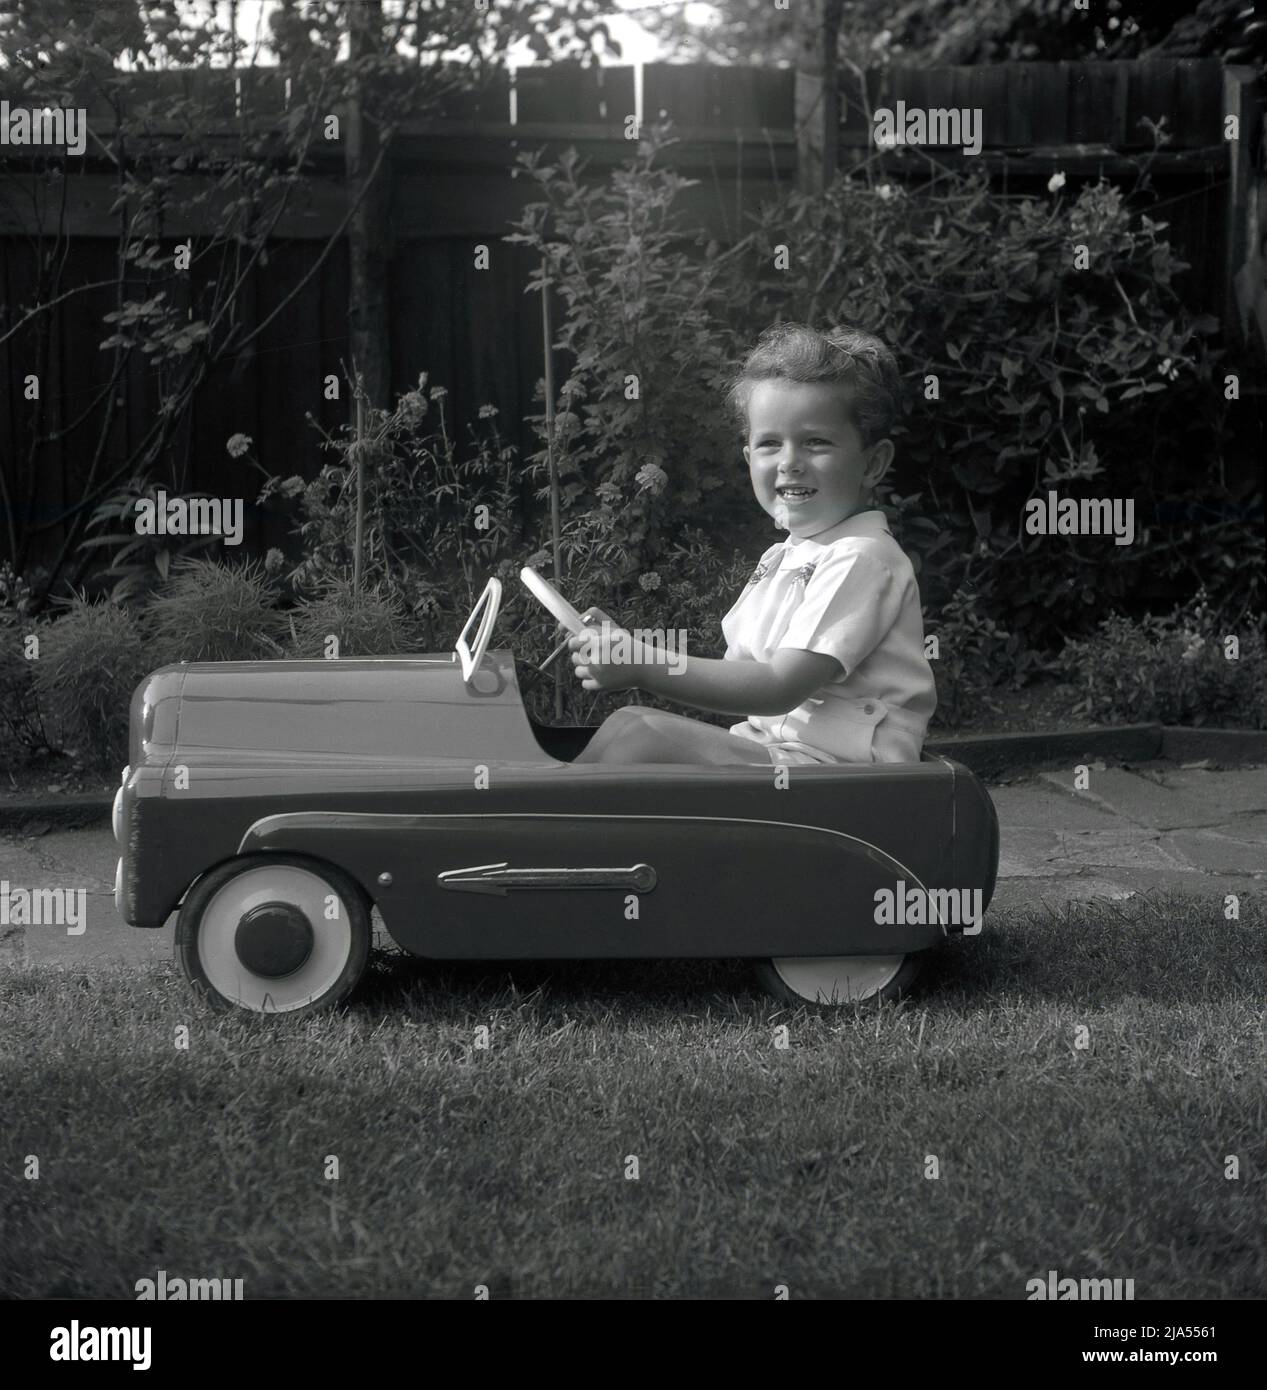 1953, historisch, draußen in einem Garten, ein kleiner Junge, der in seinem fahrbaren Spielzeugpedal der damaligen Zeit sitzt, ein britischer Tri-Ang 'Thirty B'. Aus gepresstem Stahl gefertigt, hatte das Spielzeugauto eine Hochglanz-Emaille-Oberfläche mit Chrompfeilen an der Seite. Tri-Ang war der Markenname von Line Bros. Ltd, einem britischen Unternehmen, das in dieser Zeit das größte Spielzeug- und Babywagenhersteller der Welt war. Stockfoto